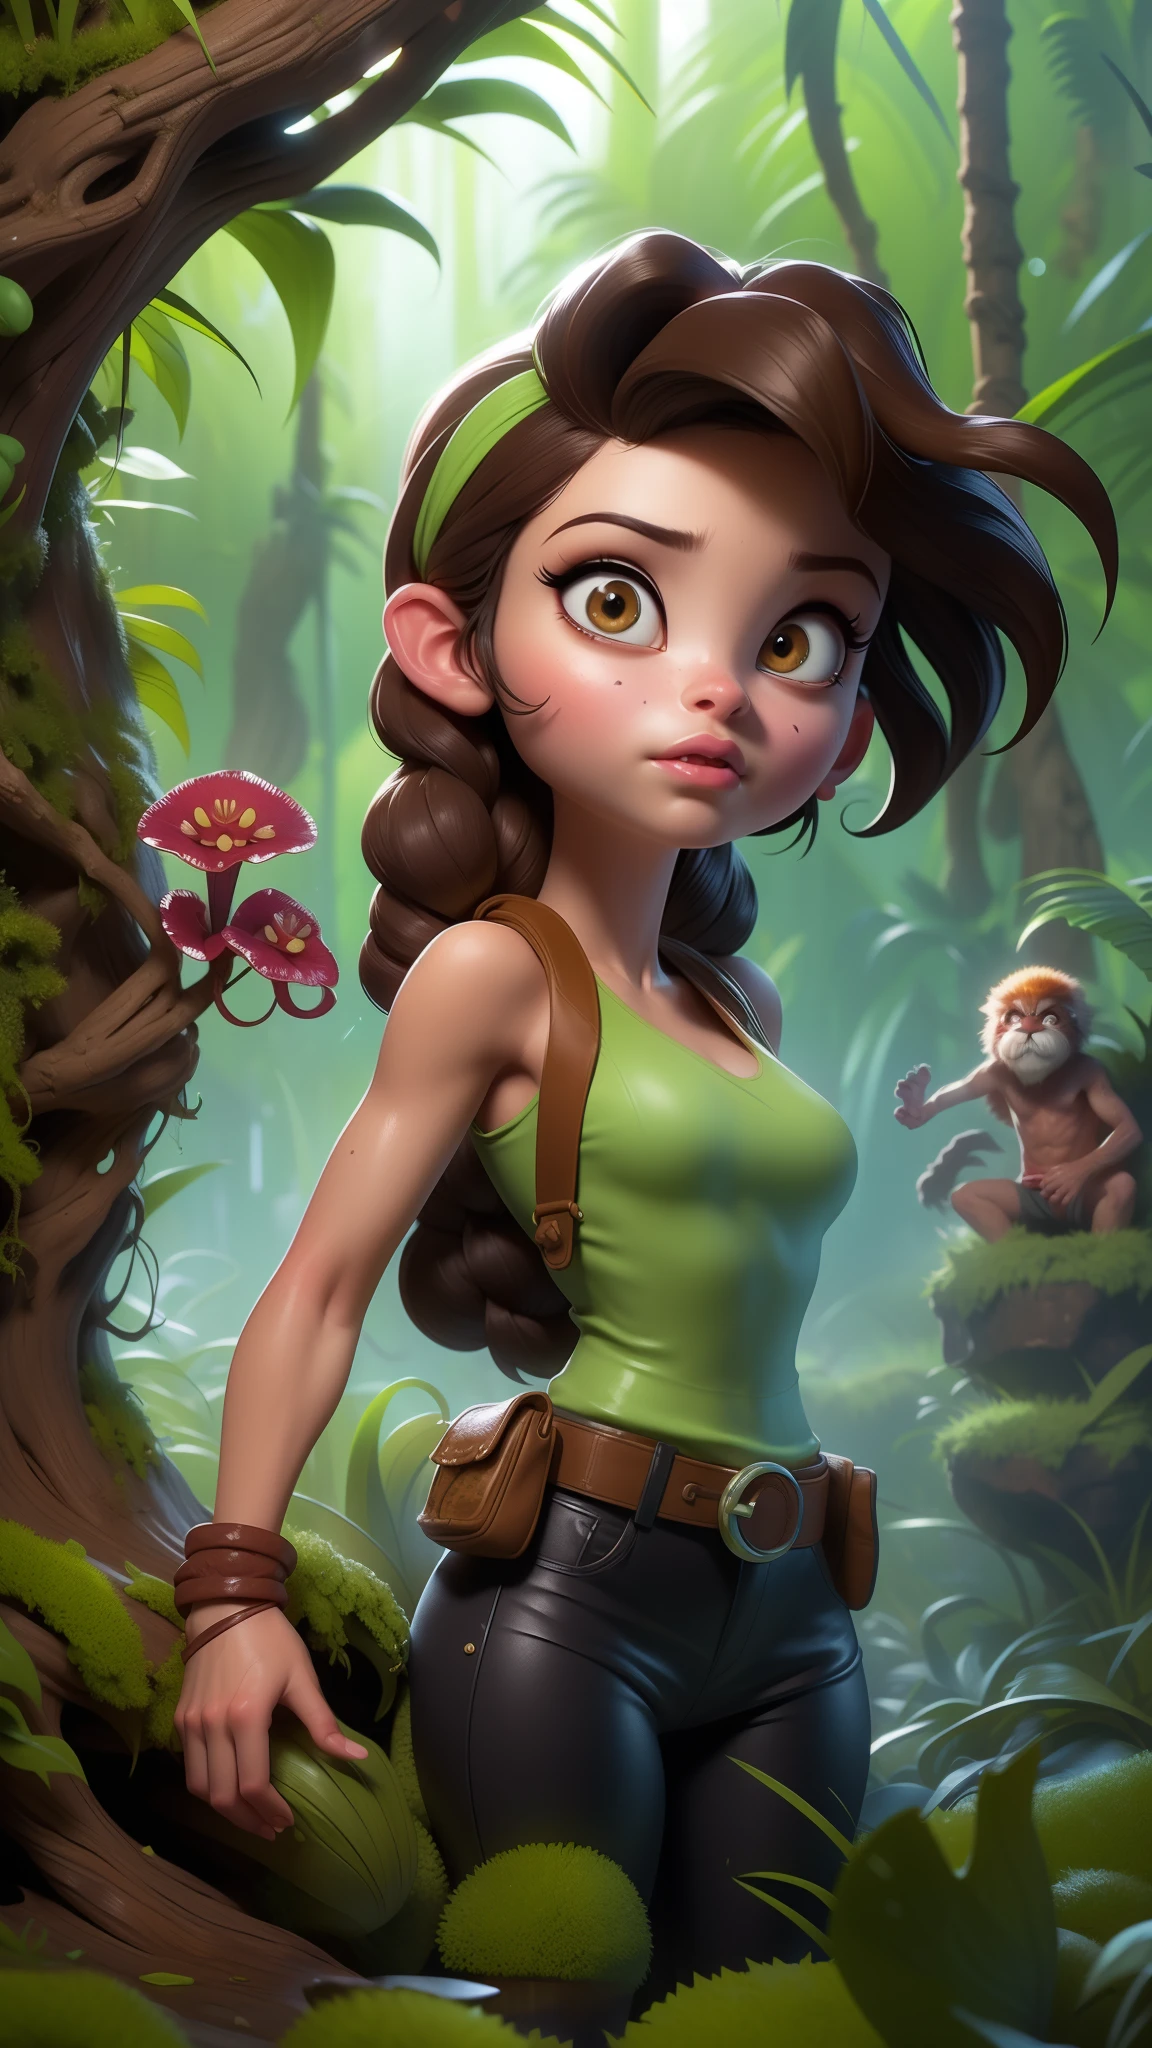 (La meilleure qualité,Une haute résolution,Ultra-détaillé,réel),  Lara Croft de Tomb Raider, ville en ruine dans la jungle, détrempé,8K plus détaillé.moteur irréel:1.4,HD,La meilleure qualité:1.4, Photoréaliste:1.4, Texture de la peau:1.4, Chef-d&#39;œuvre:1.8,Chef-d&#39;œuvre, meilleure qualité,objet Objet], (traits du visage détaillés:1.3),(Les bonnes proportions),(doigts détaillés convexes),(Beaux yeux bleus),(pose de cow-boy ), (fond jungle africaine ruines plantes carnivores.:1.4) ,(tresse de cheveux en queue de cochon) 